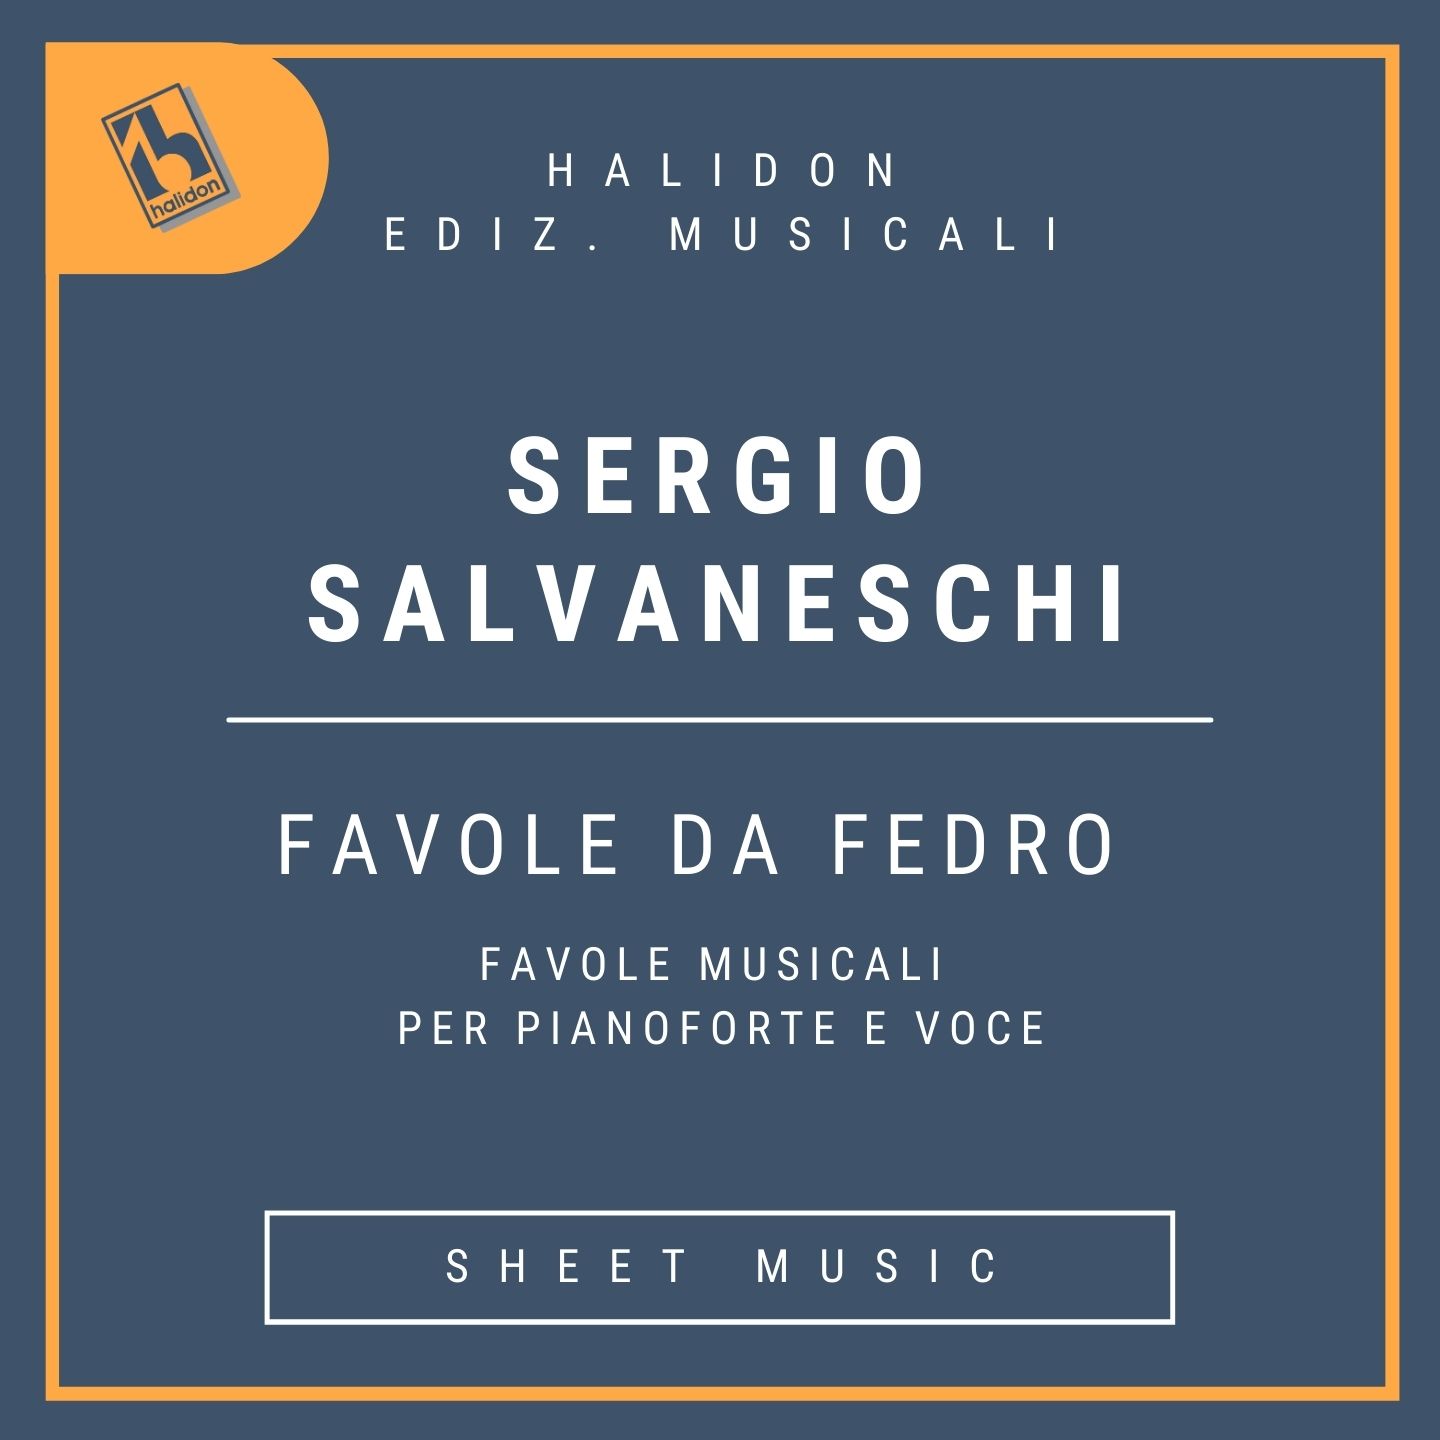 Favole da Fedro (Favole musicali per pianoforte e voce)